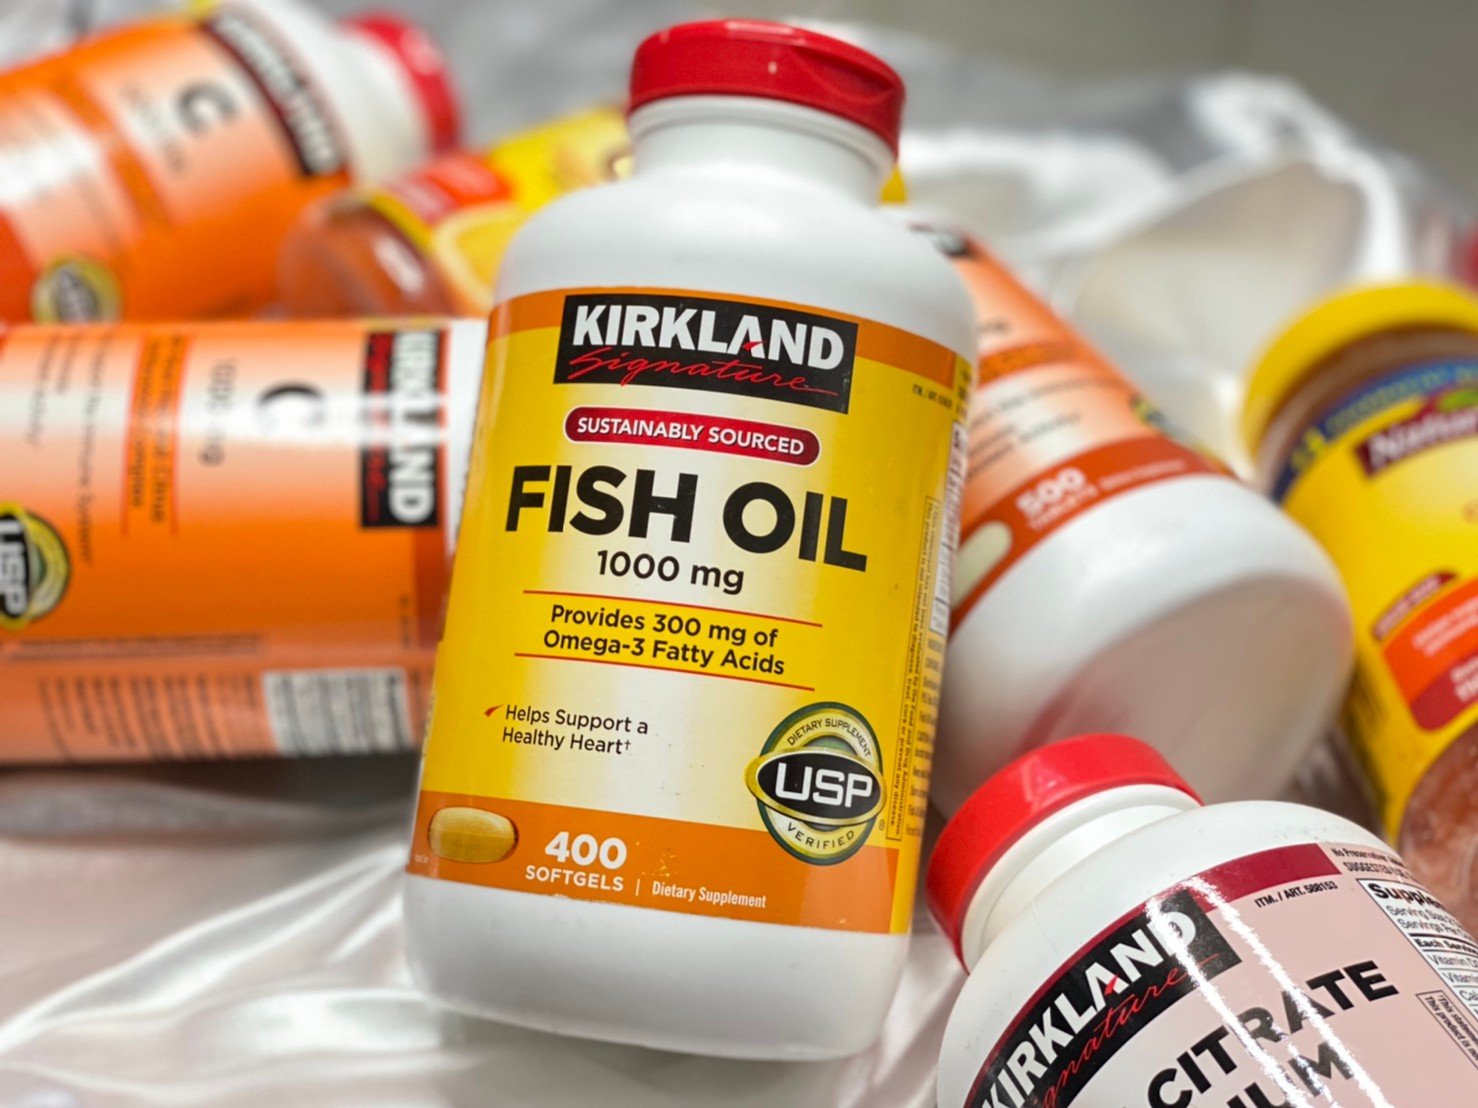 Kirkland Signature Fish Oil 1000mg (400Softgels)